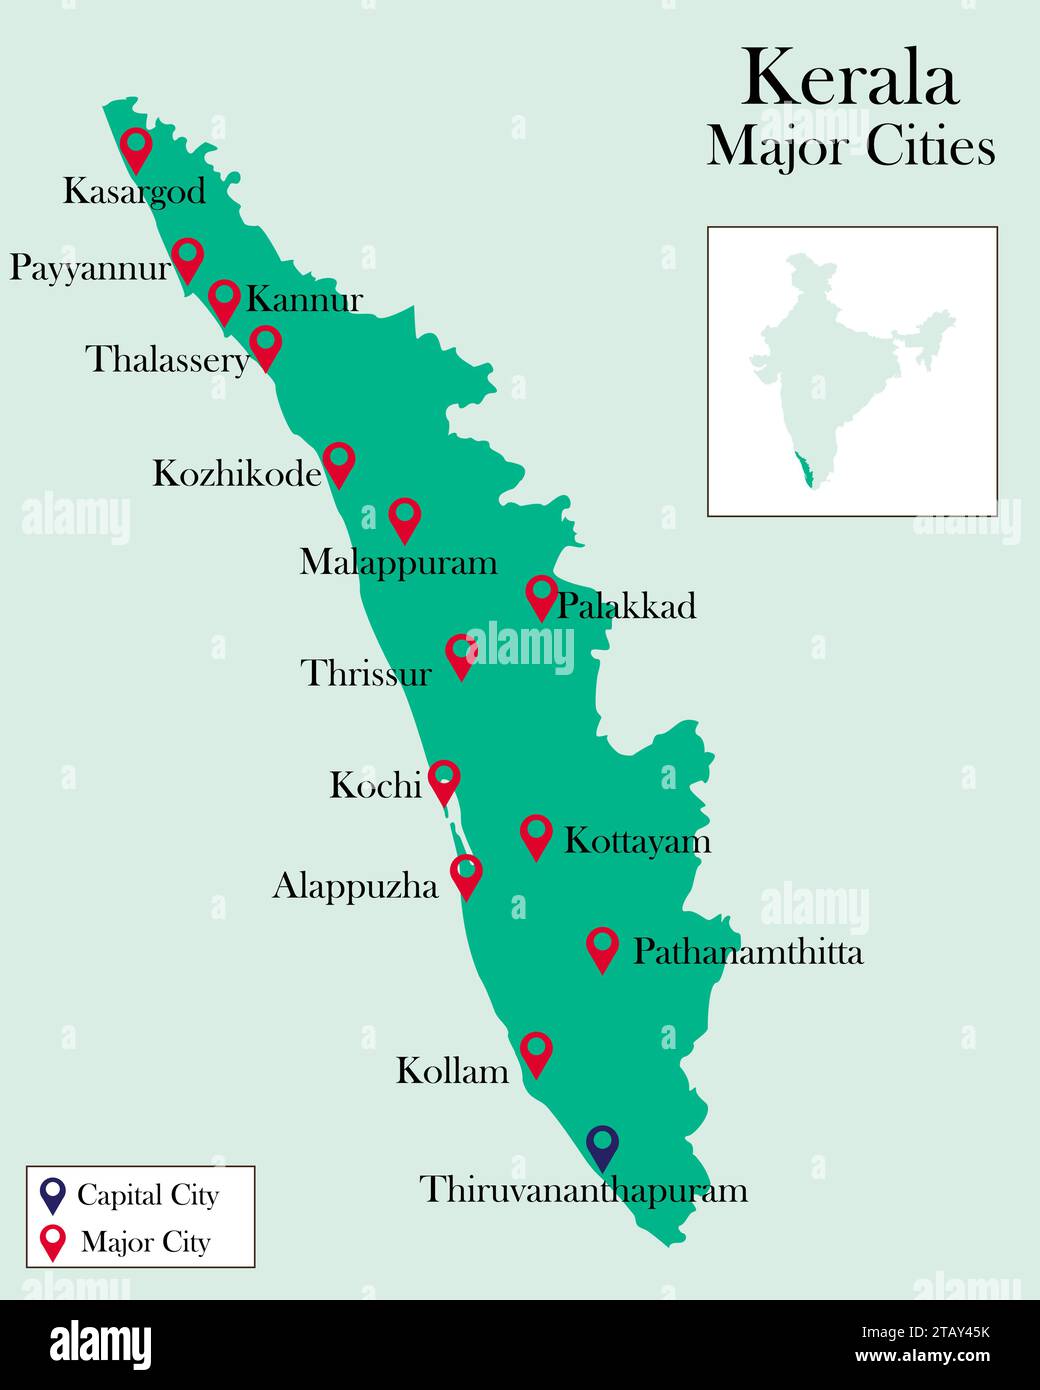 Major Cities of Kerala pinned on Kerala Map Stock Vector